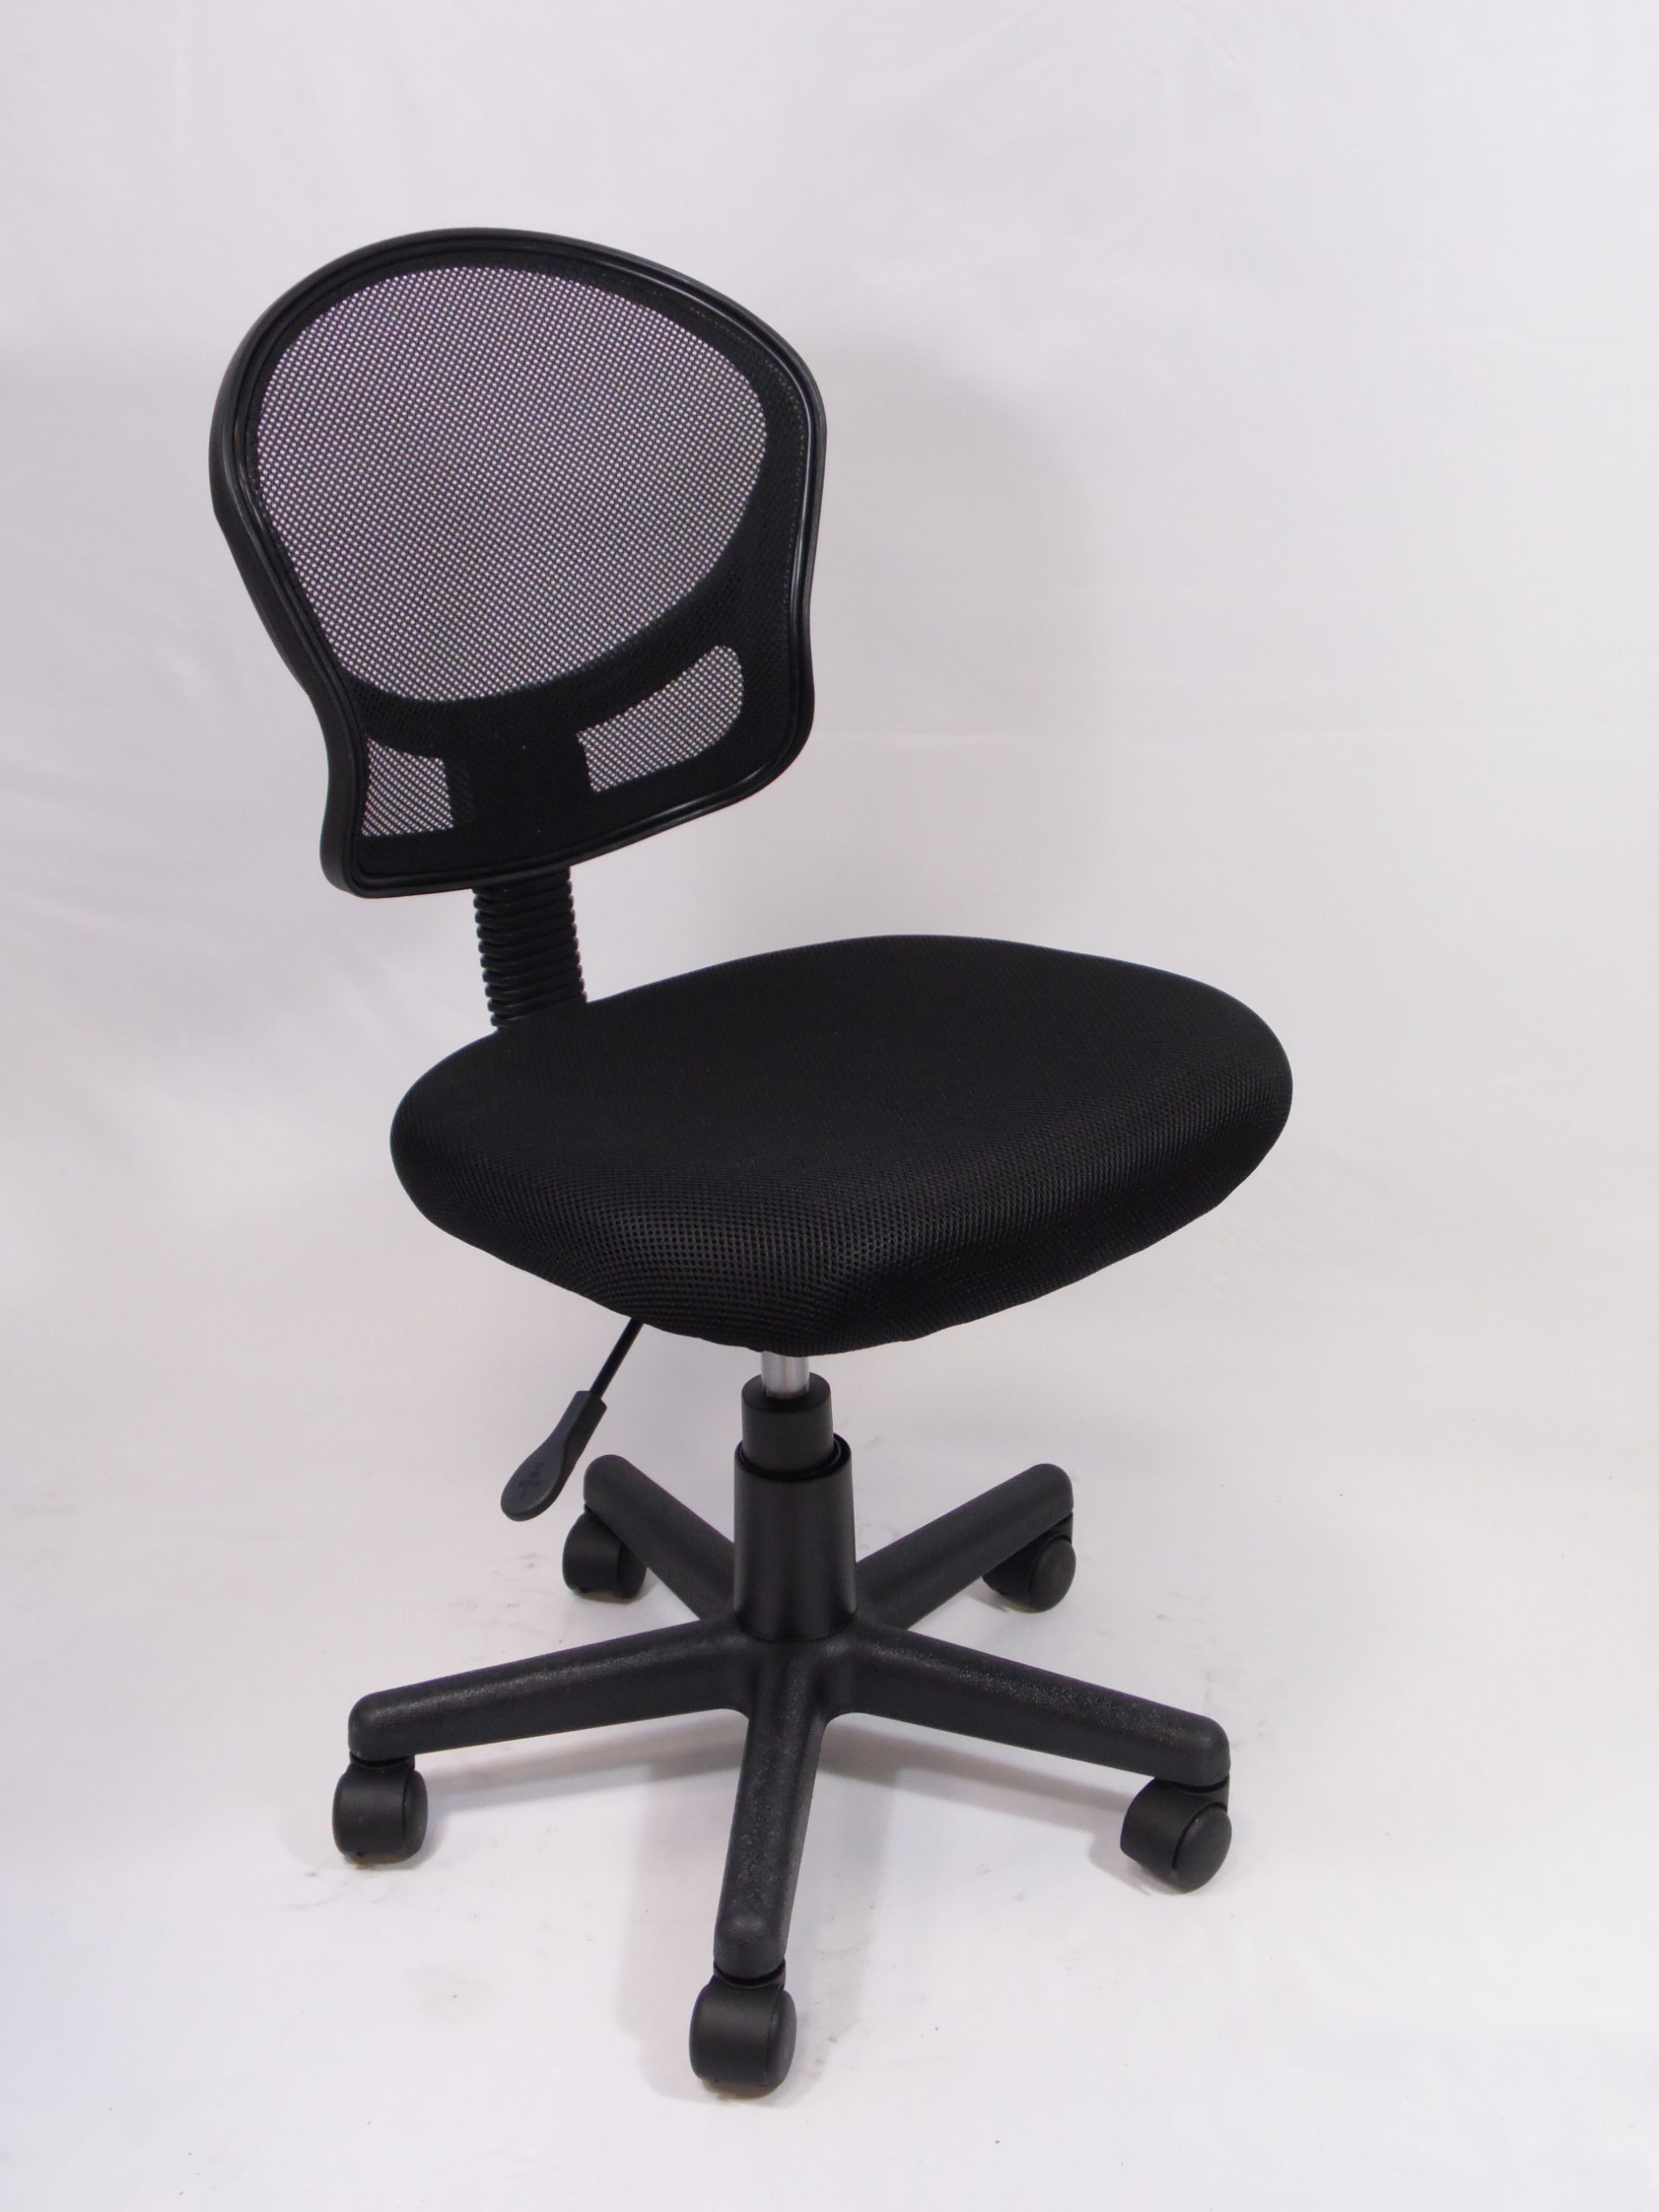 sedie per pc : h 88cm x d 53cm, h sedile 49cm x d sedile 50 cm; Materiale: plastica e tessuto color nero